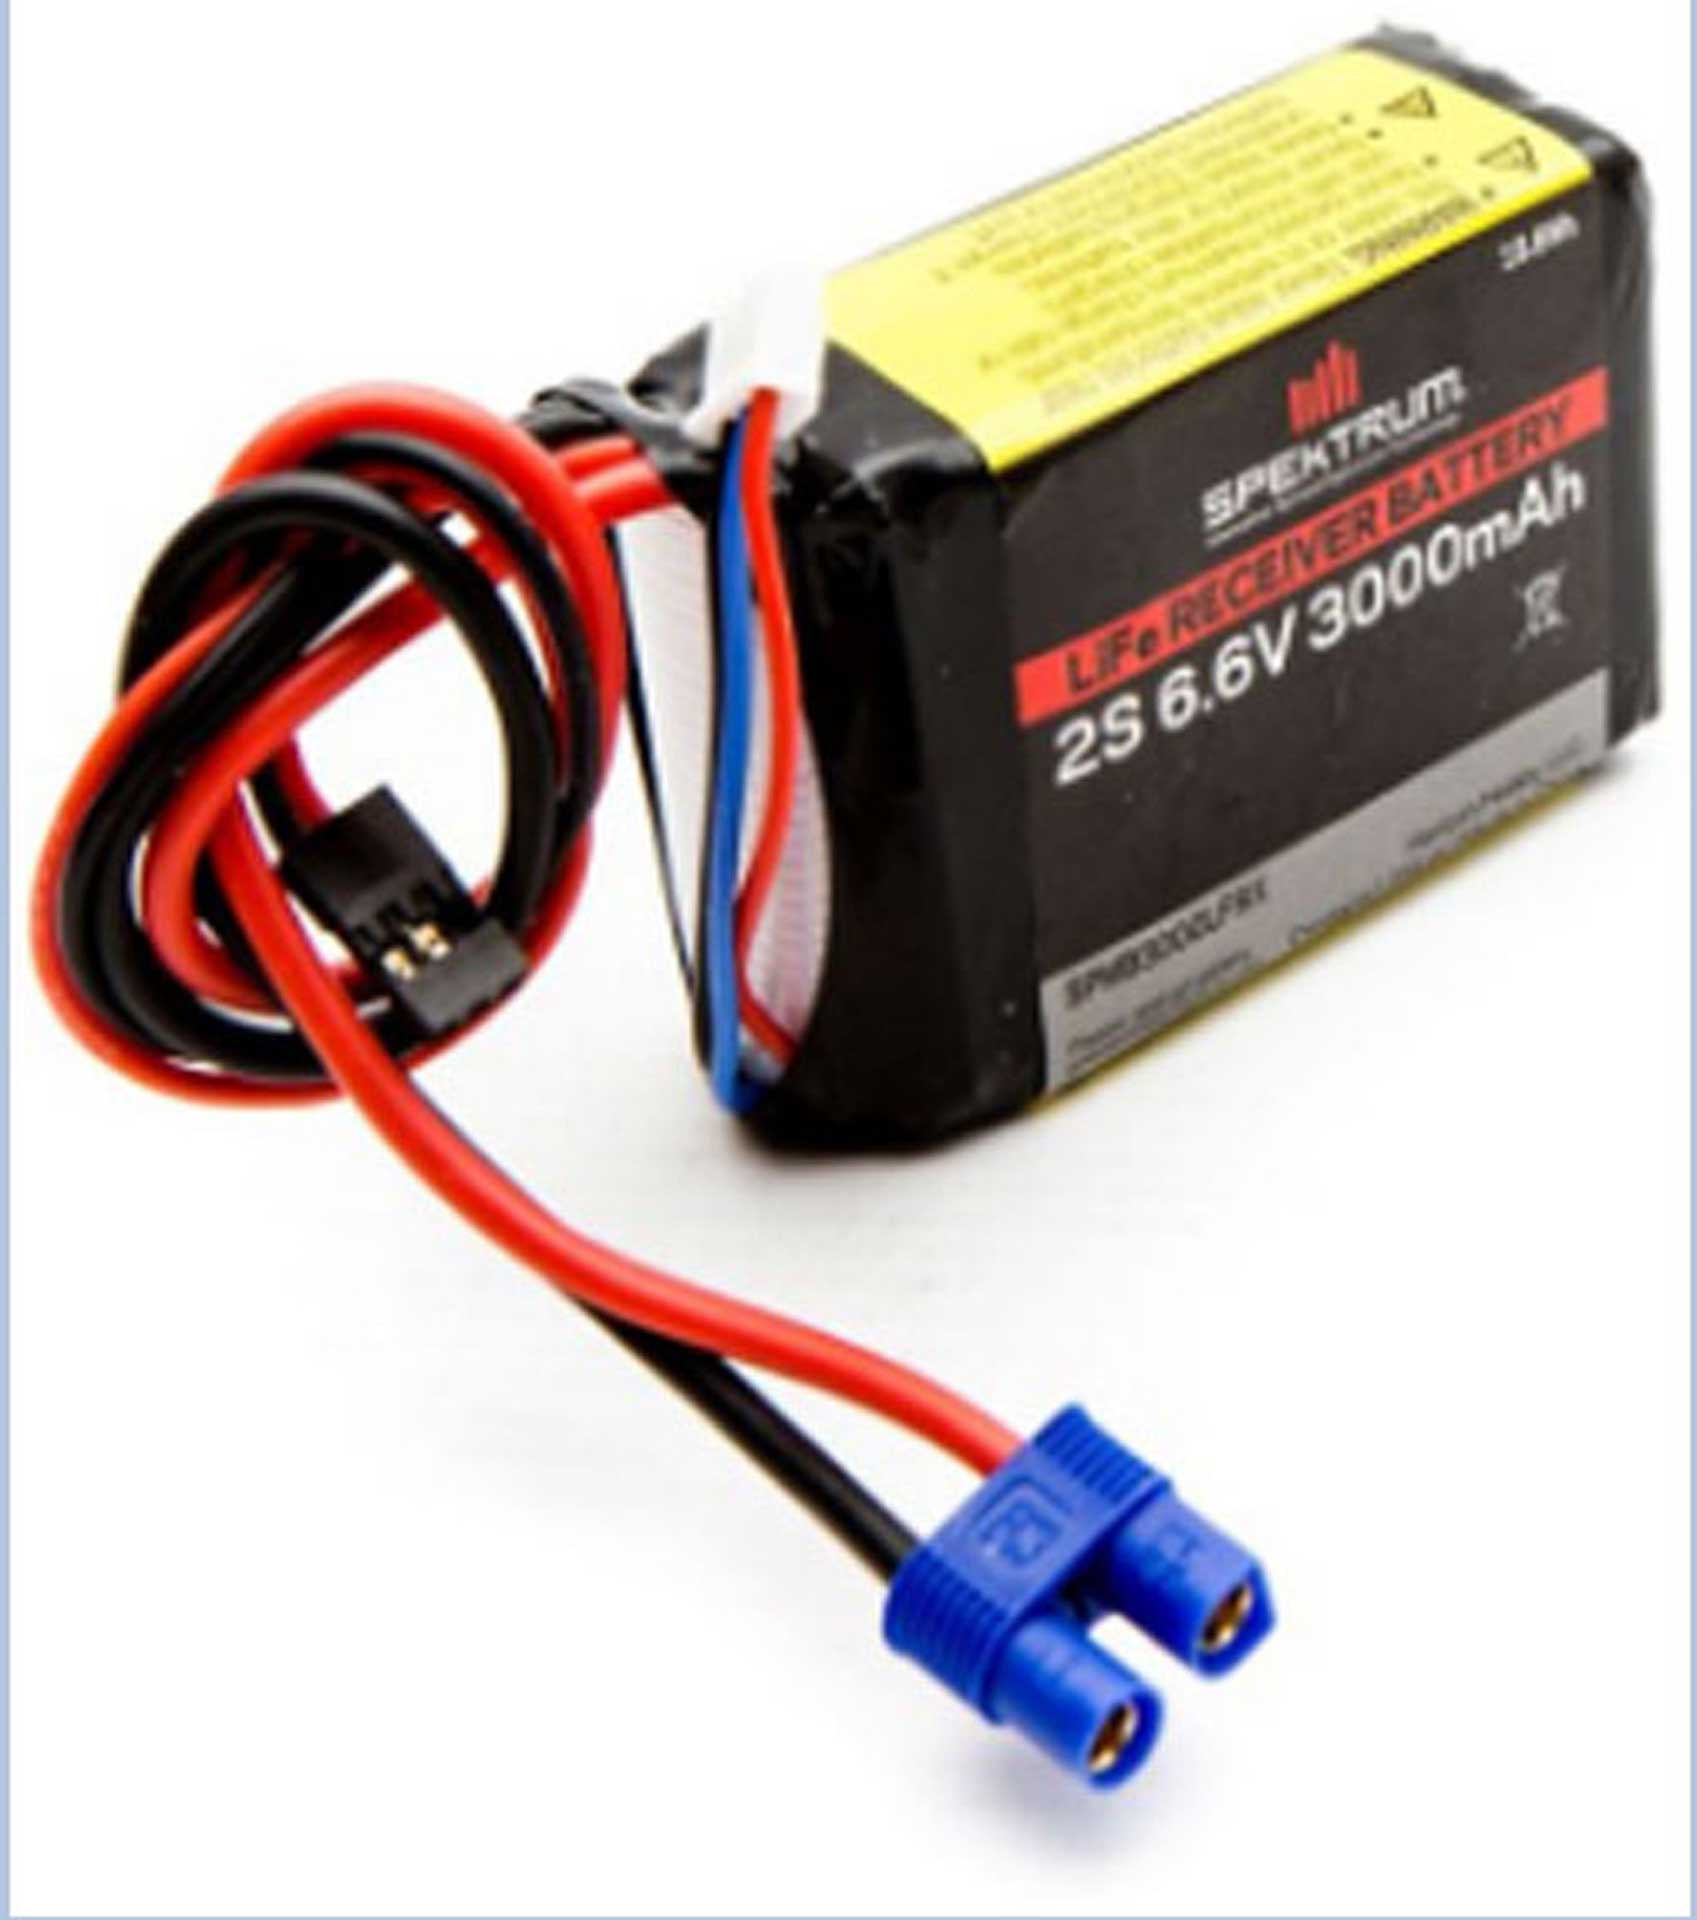 SPEKTRUM 6.6V 3000mAh 2S LiFe Receiver Battery: Universal Receiver, EC3